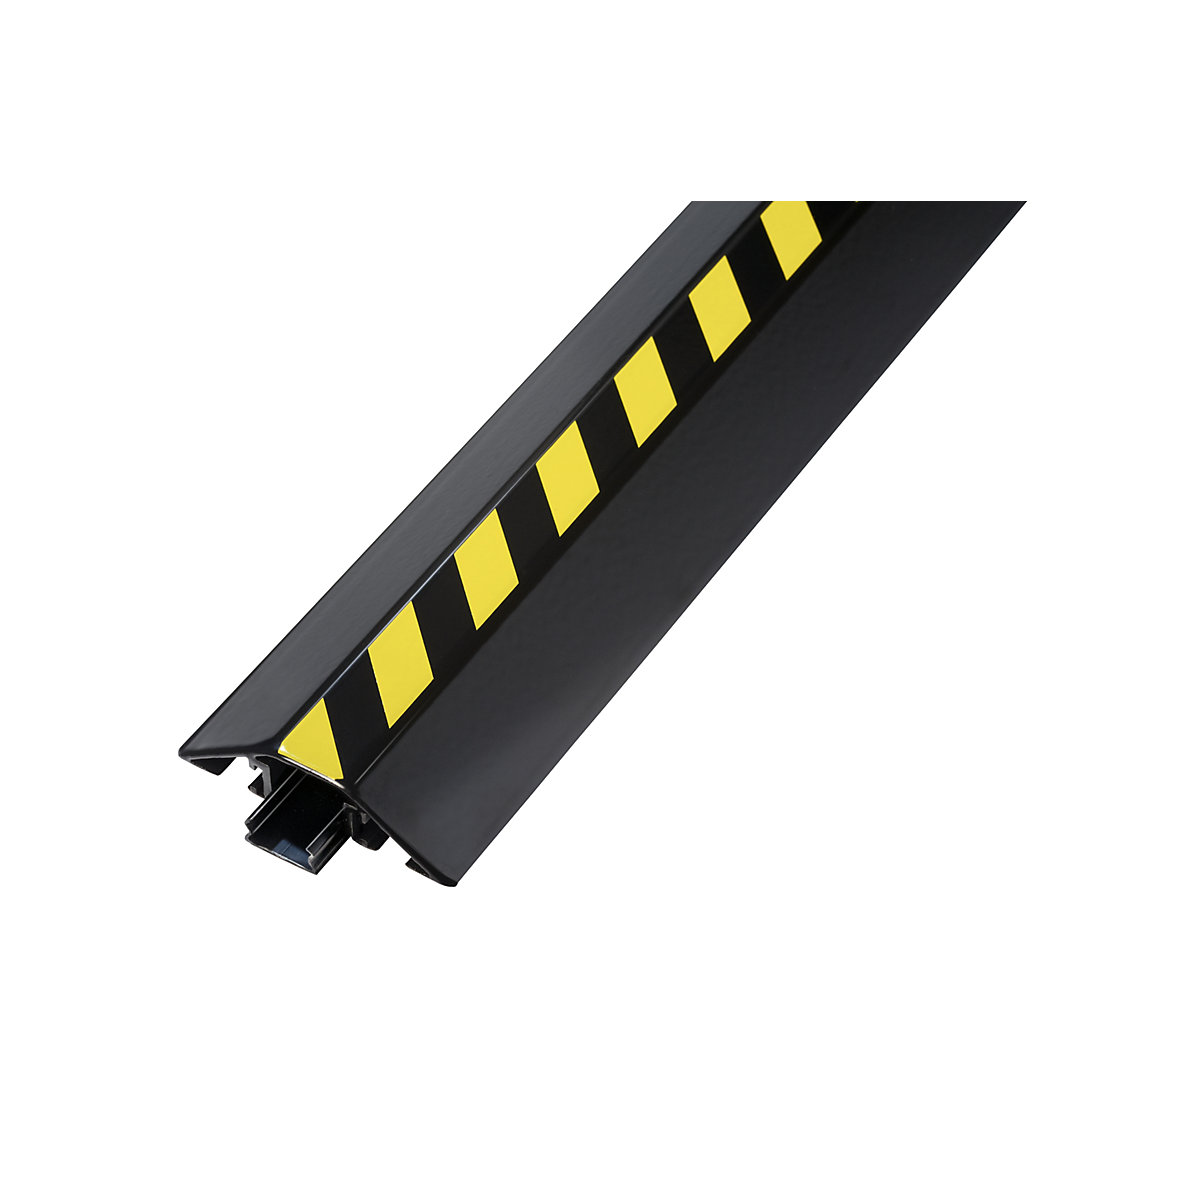 Canal para cable de aluminio, L x A x H 1500 x 80 x 20 mm, negro / amarillo, UE 1 unid.-4